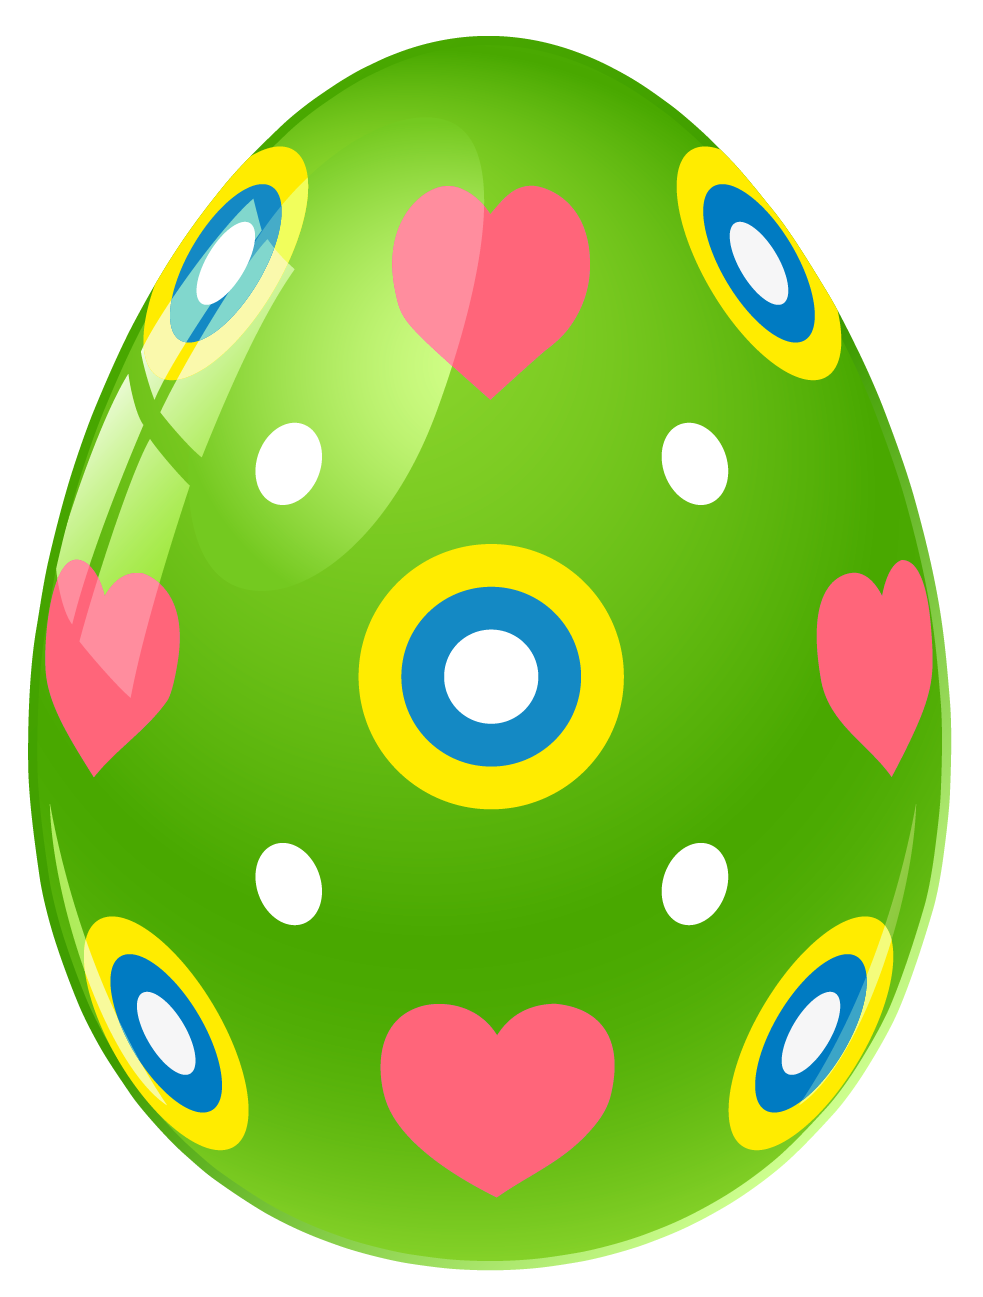 Clip Art Of Easter Eggs